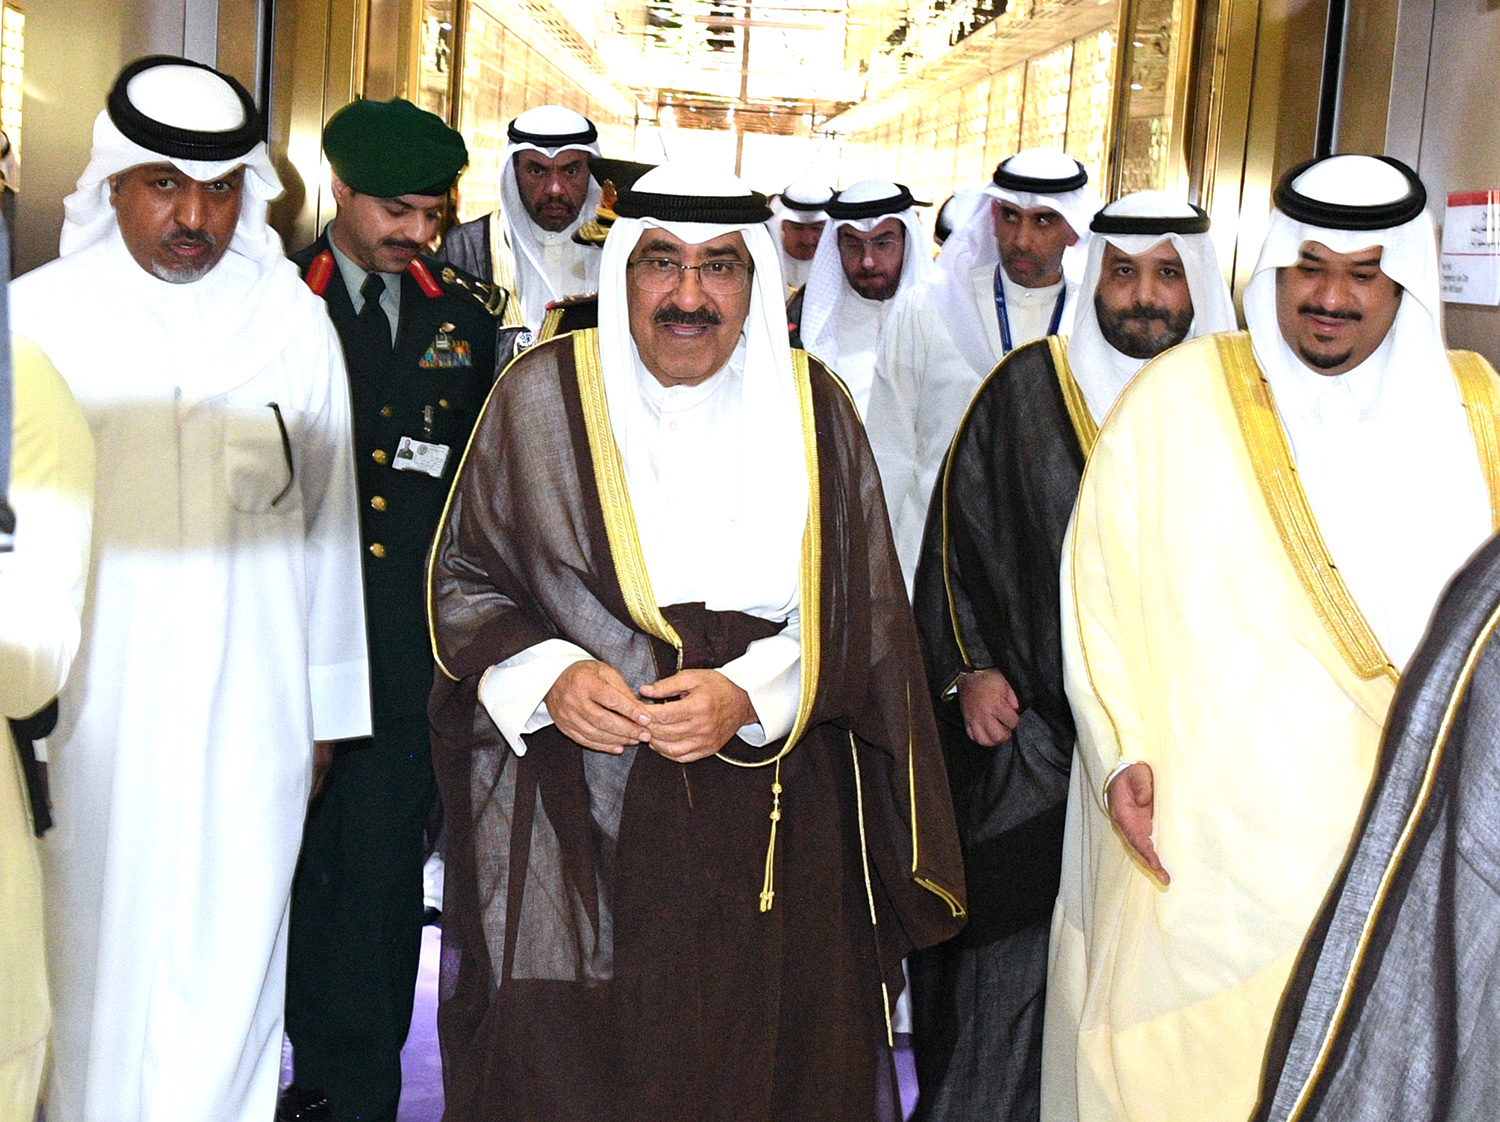 سمو أمير البلاد يصل إلى السعودية لترؤس وفد دولة الكويت في المنتدى الاقتصادي العالمي بالرياض